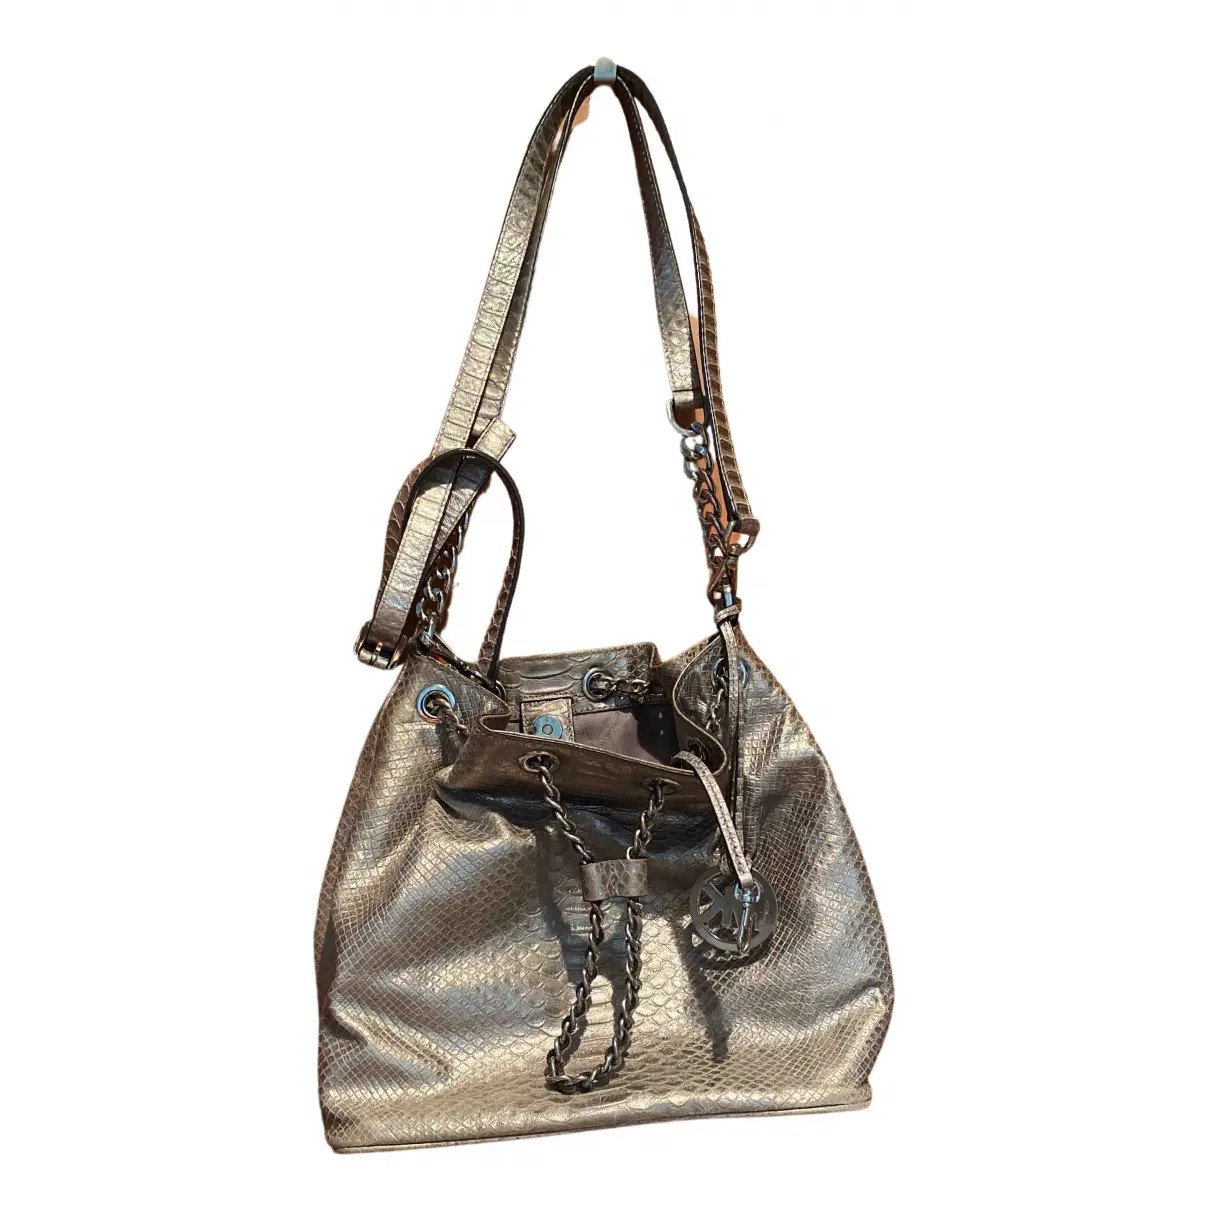 Frankie leather handbag Michael Kors